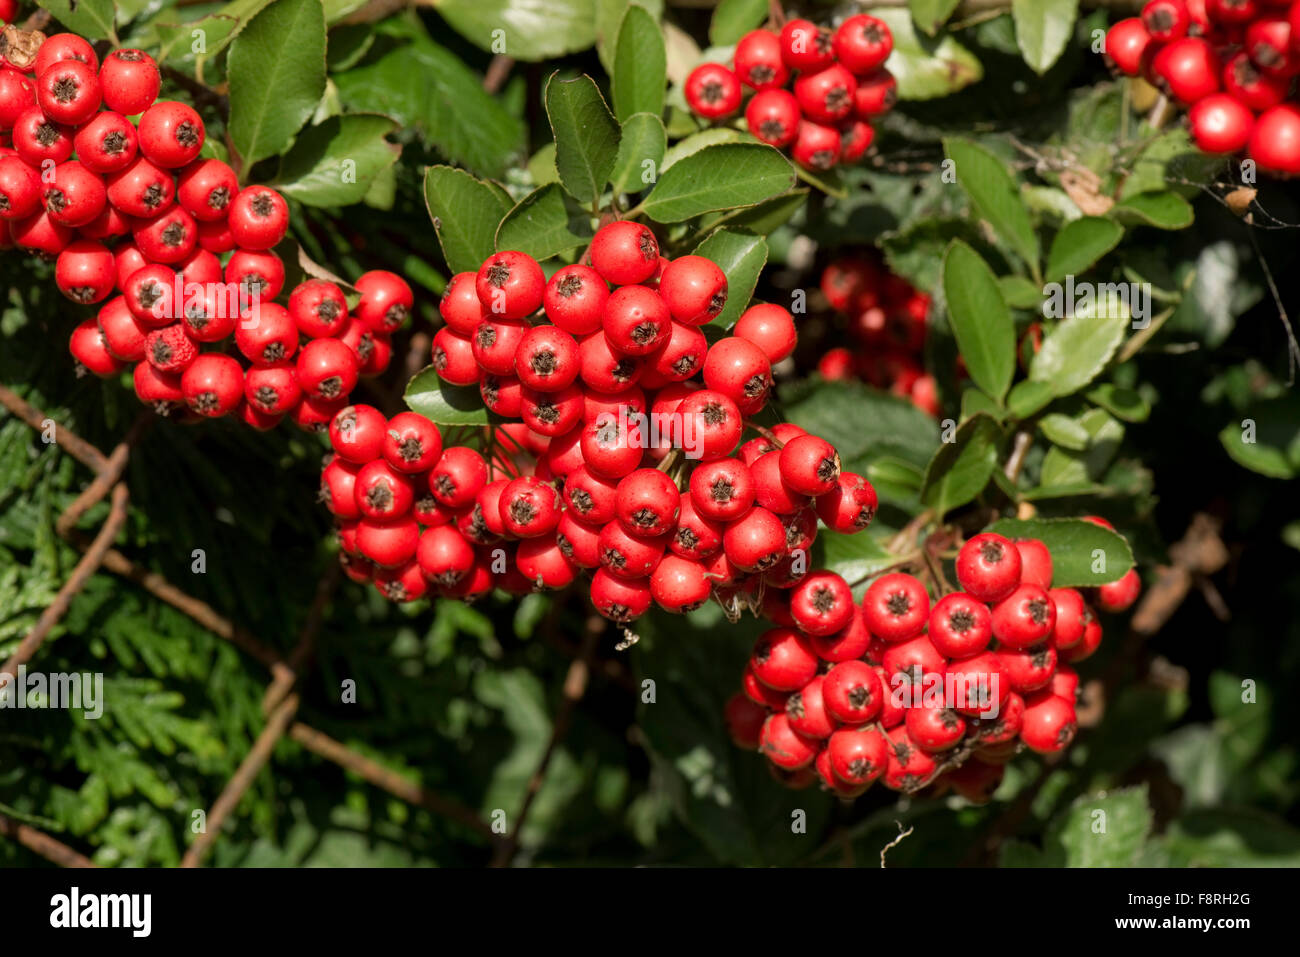 Leuchtend rote Masse der Beeren am Feuerdorn, Pyracantha Coccinea, Garten Strauch im Herbst, Berkshire, September Stockfoto